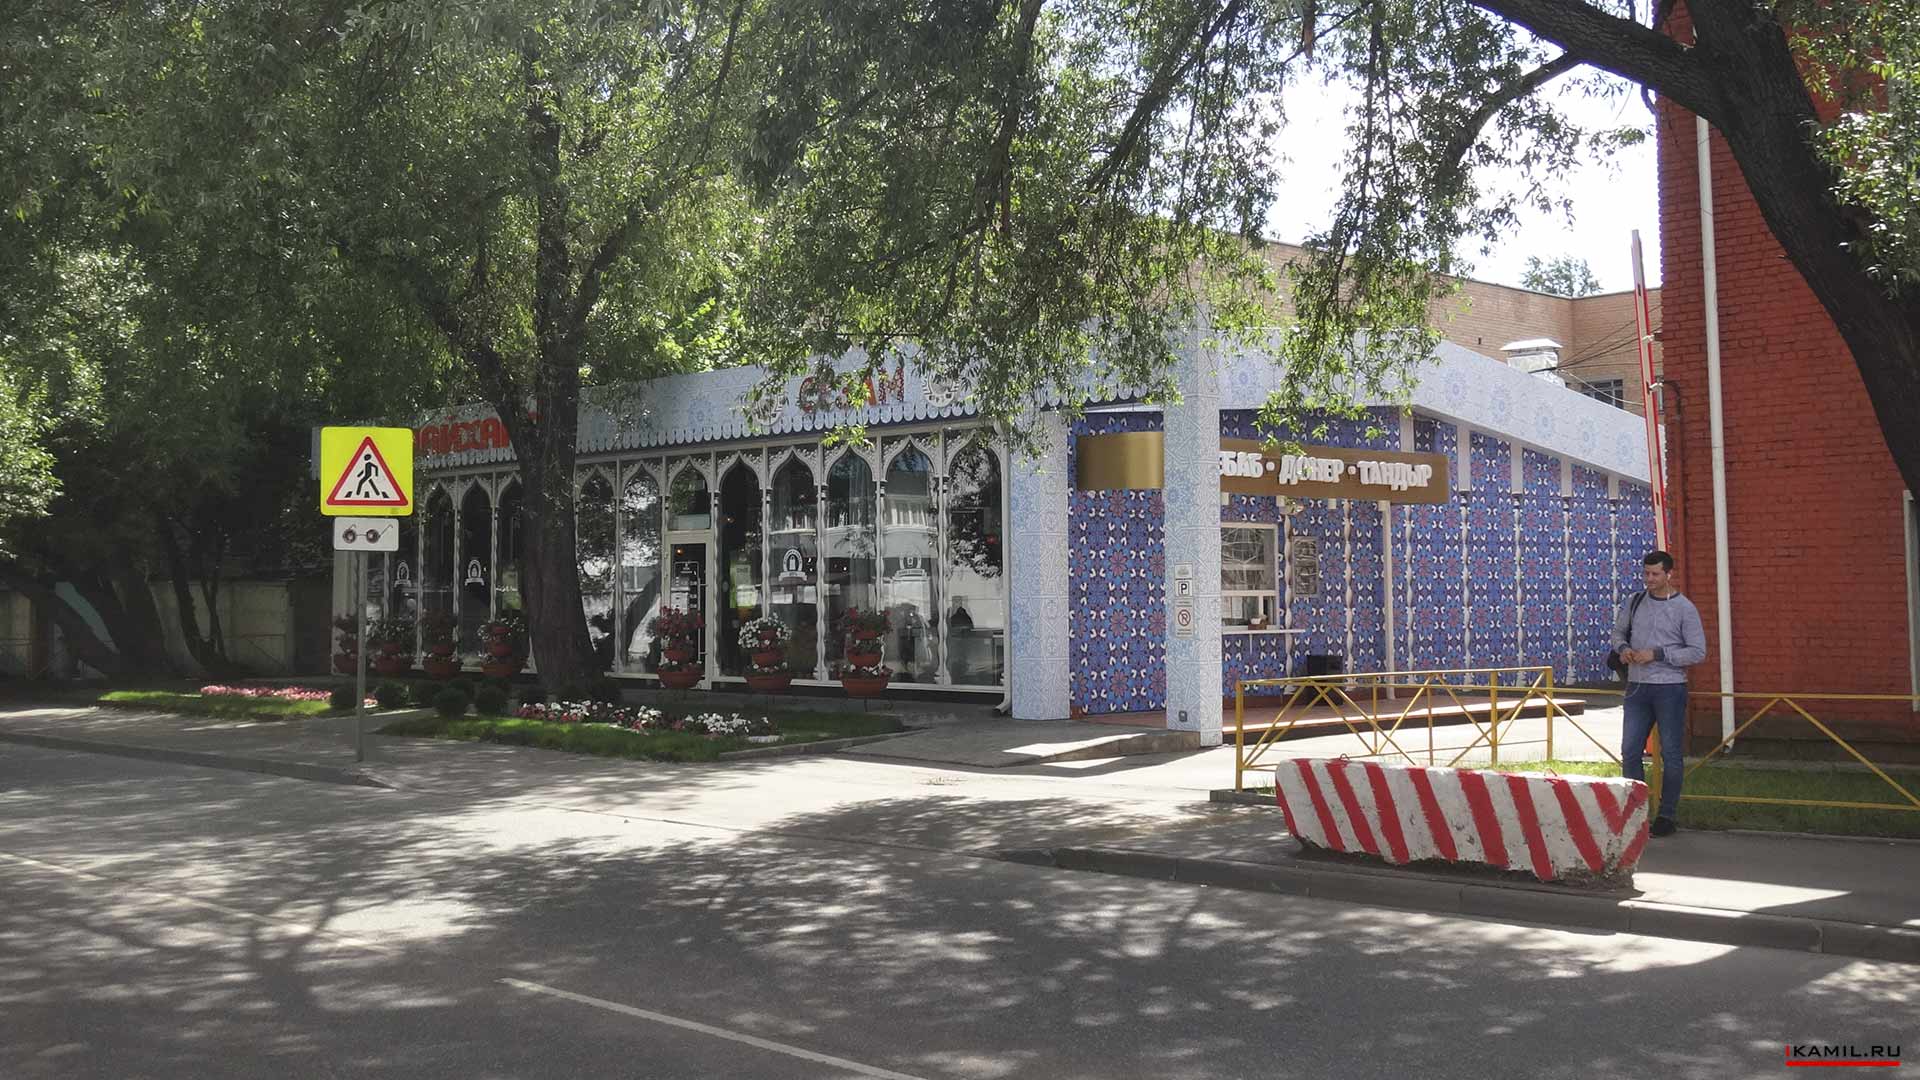 дизайн реконструкции фасада здания ресторана чайхана сезам ikamildesign